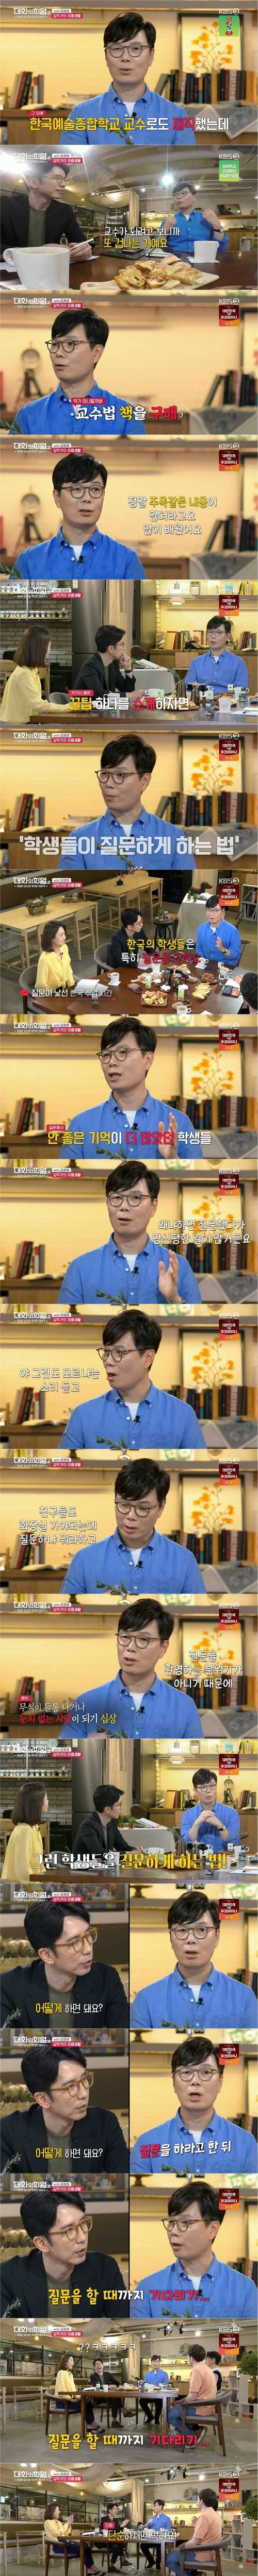 [스압] 김영하가 교수 시절 학생들에게 질문시킨 방법.jpg